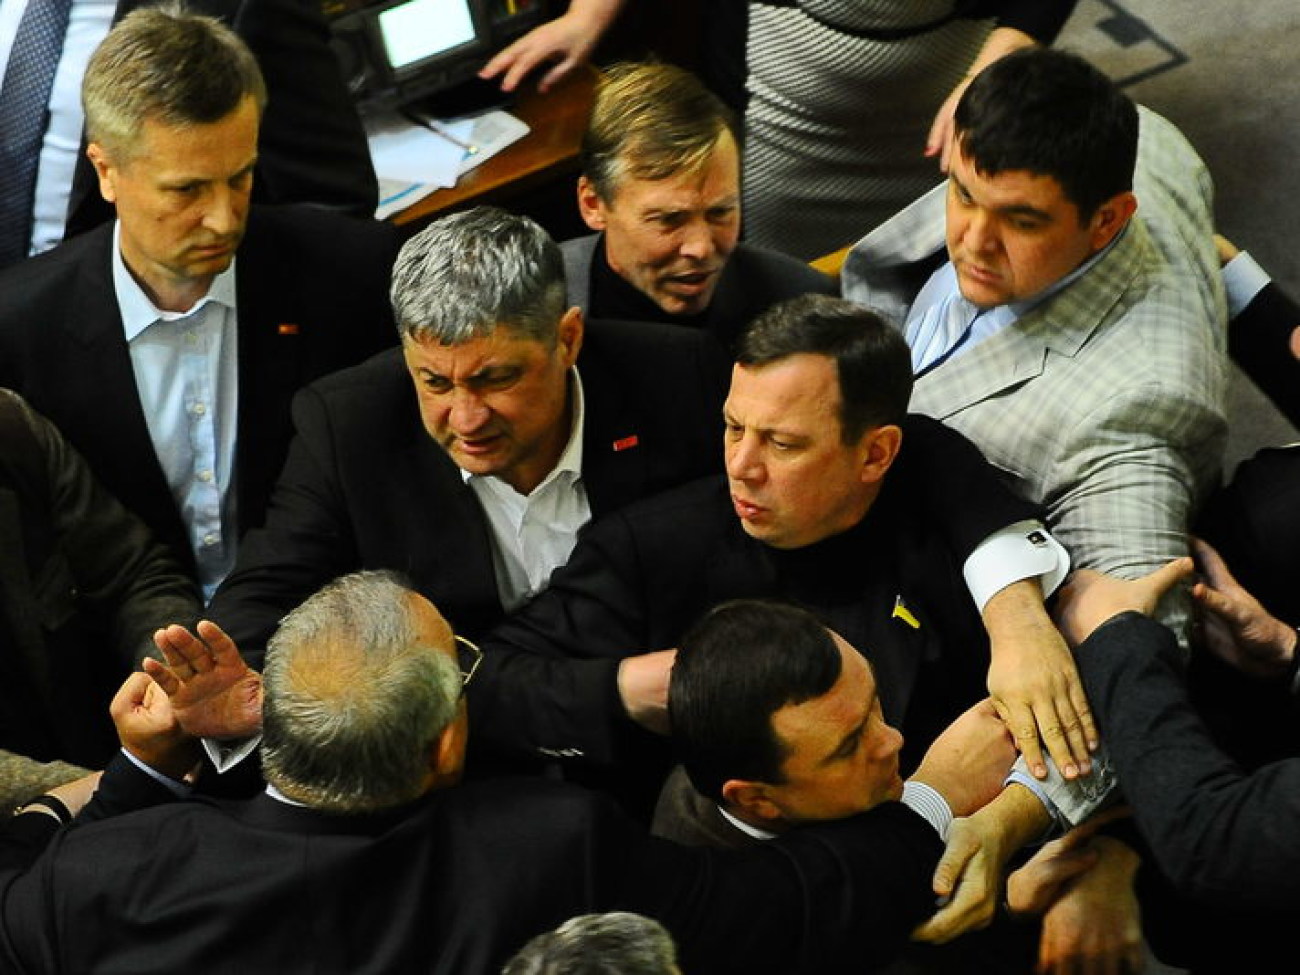 Битва за бюджет: побитые депутаты и запертый спикер, 16 января 2013г.